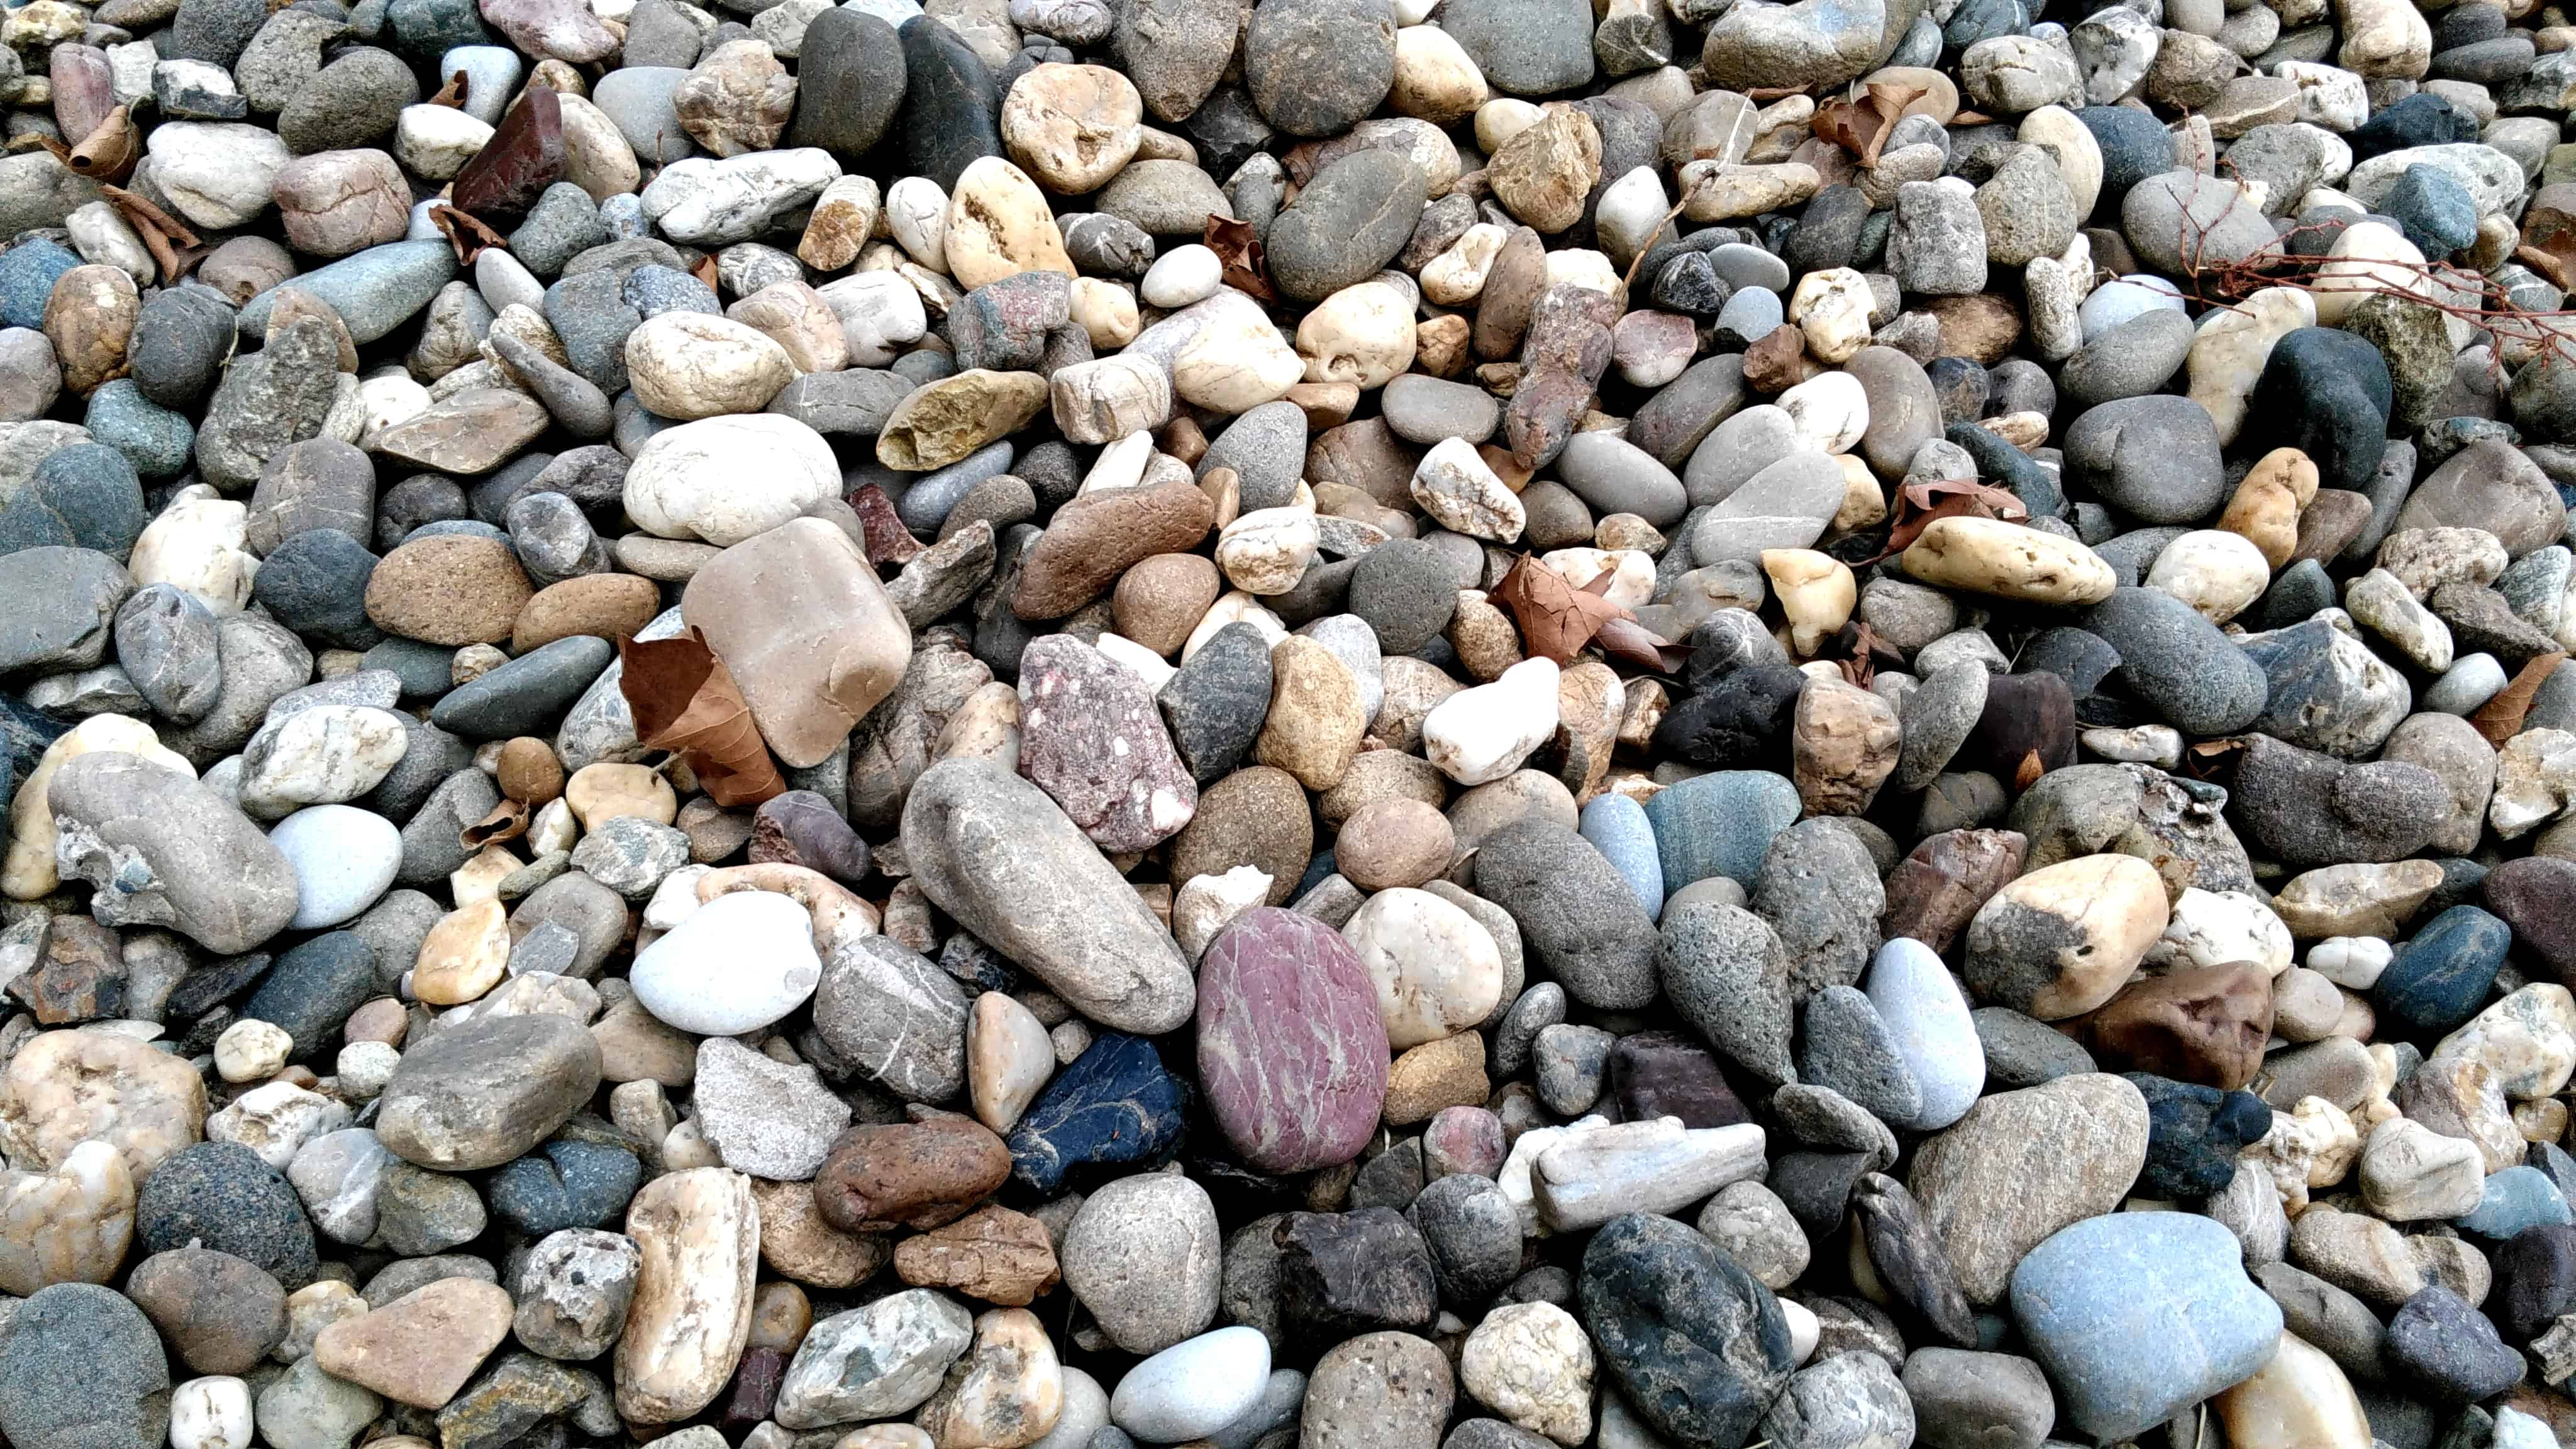 Ground stone. Текстура камня. Каменистый берег текстура. Земля с валунами. Булыжник одна сторона.